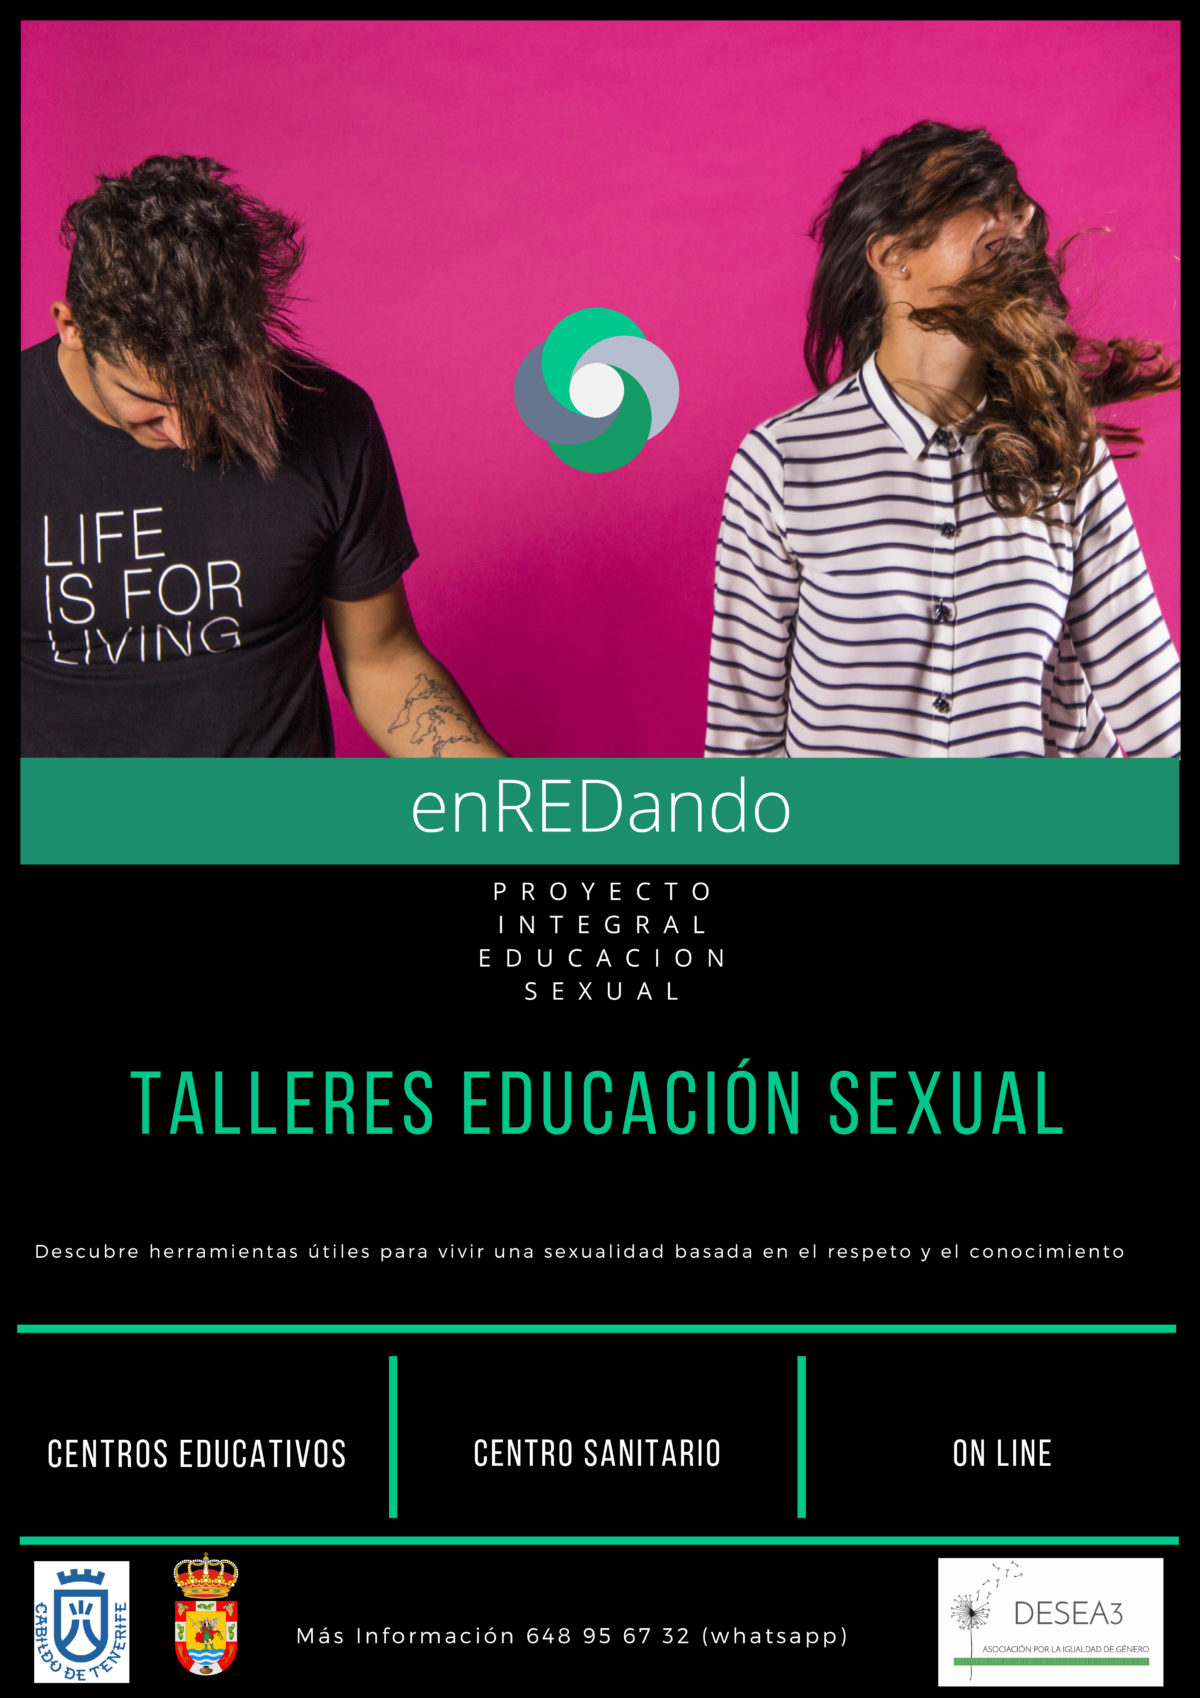 Proyecto integral de educación afectivo-sexual para adolescentes “EnREDando”